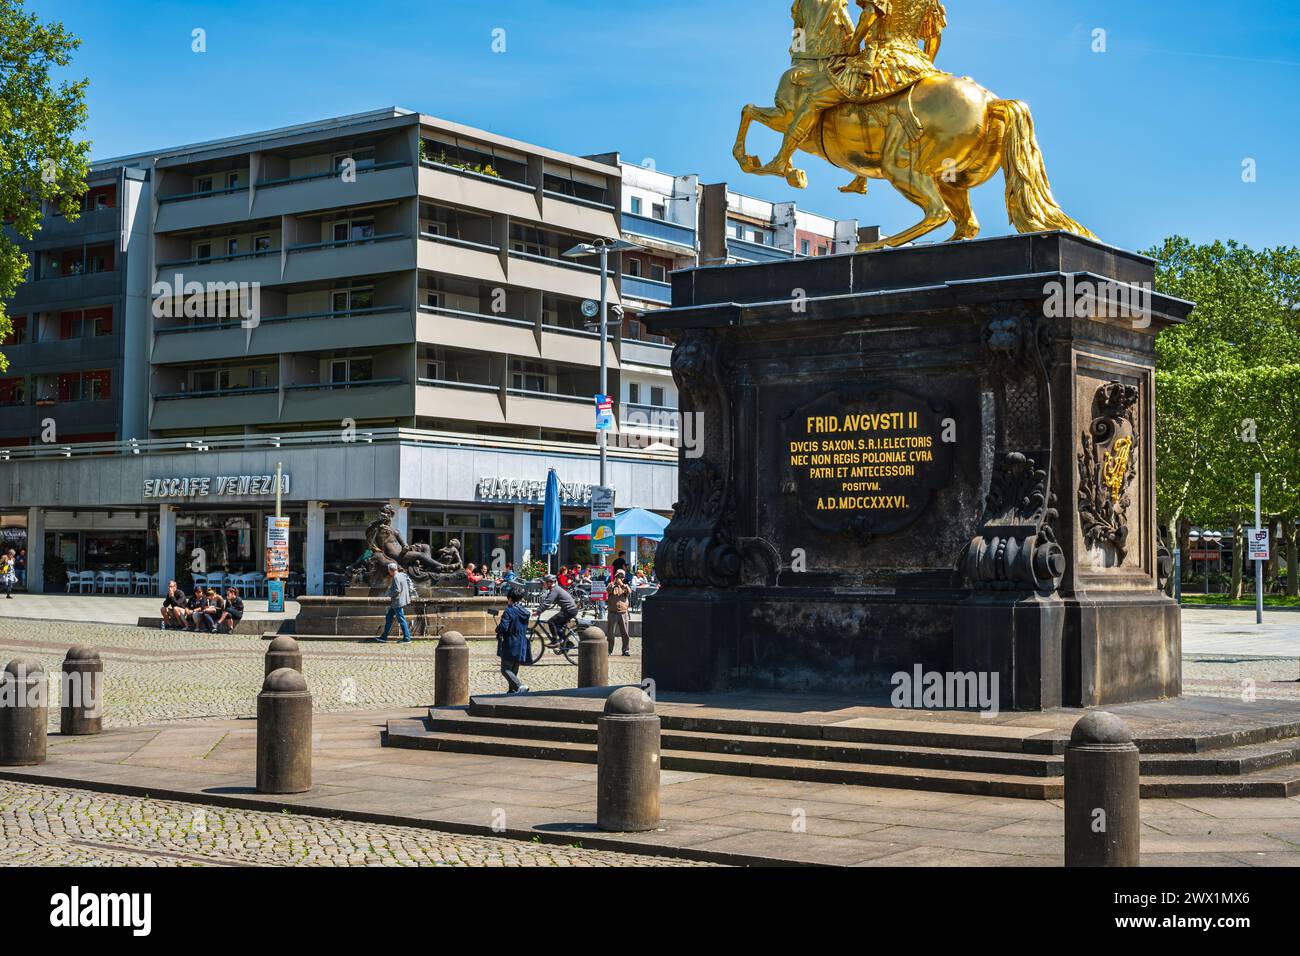 Cavaliere d'oro, statua equestre dell'elettore sassone e re di Polonia, Augusto il forte al mercato della città nuova di Dresda, Sassonia, Germania. Foto Stock